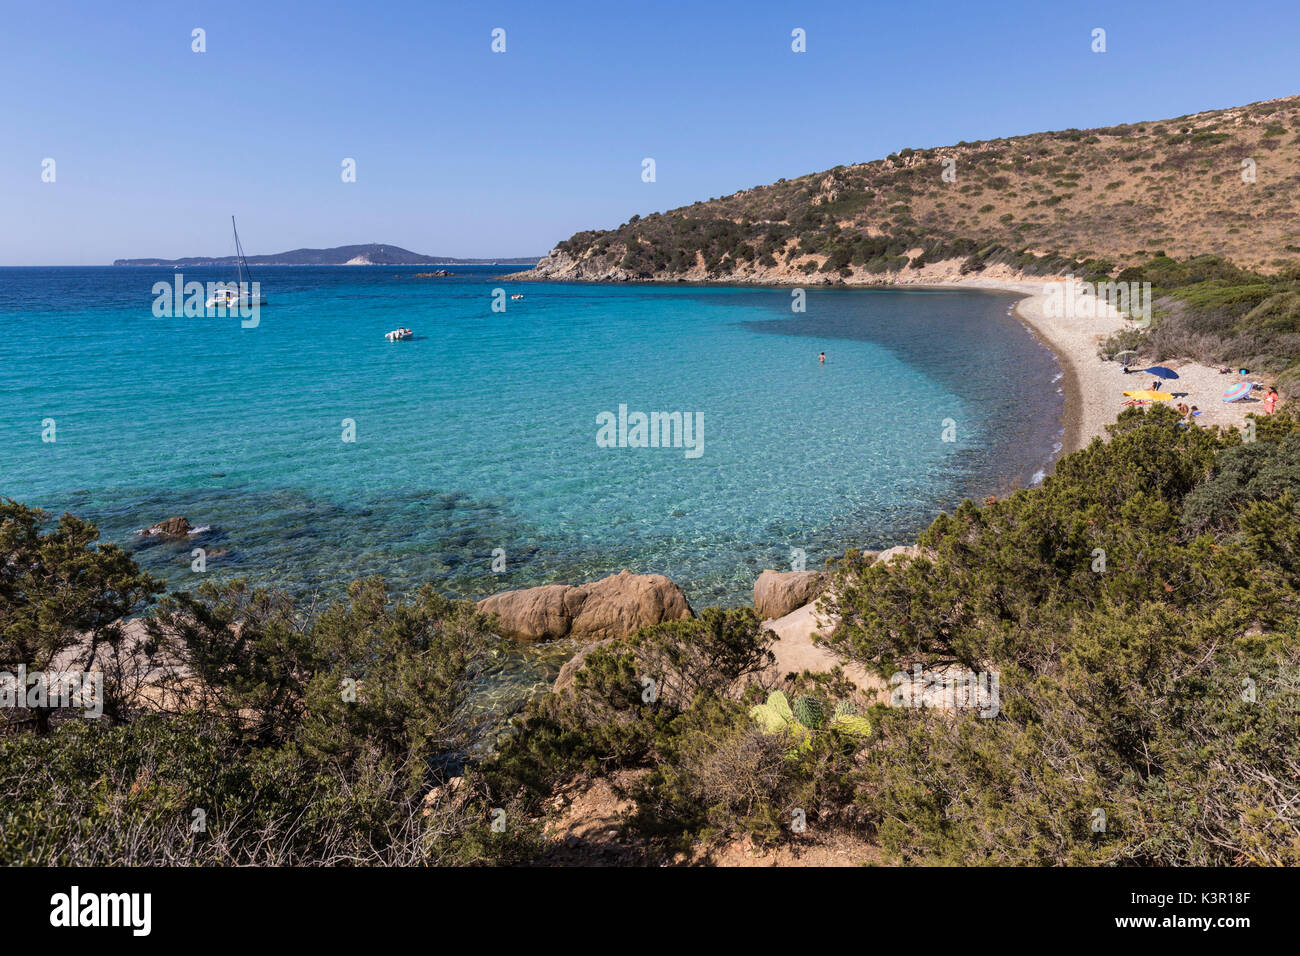 Vista de la bahía y la playa de arena, rodeado por el mar turquesa Punta Molentis Villasimius Cerdeña Cagliari Italia Europa Foto de stock